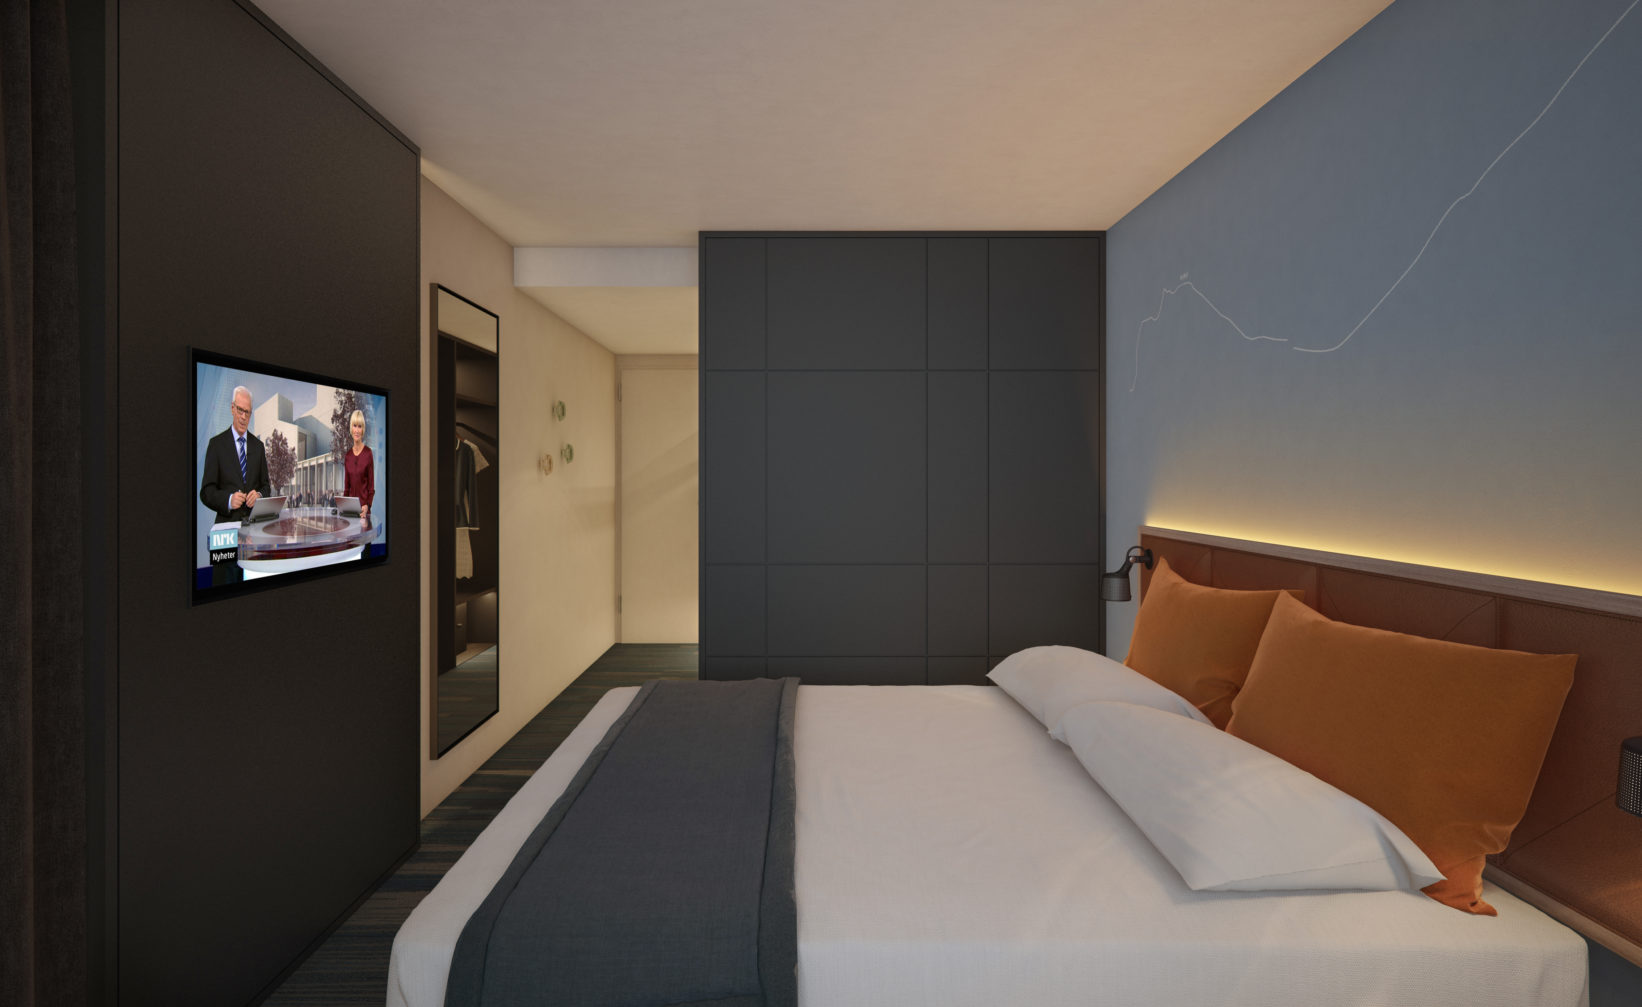 et rom med seng og tv på veggen.